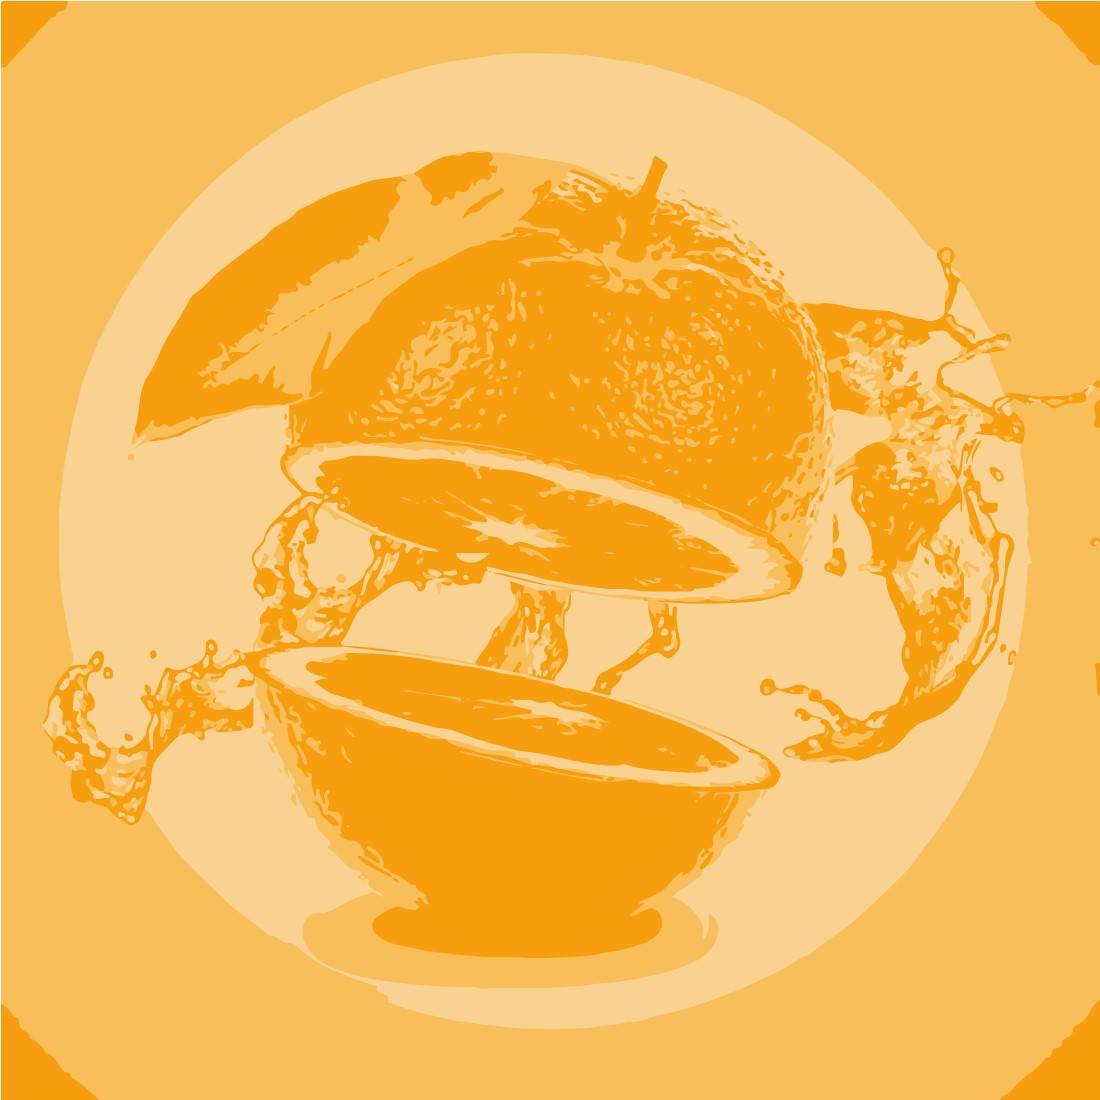 Orange Splash Graphics Design cover image.